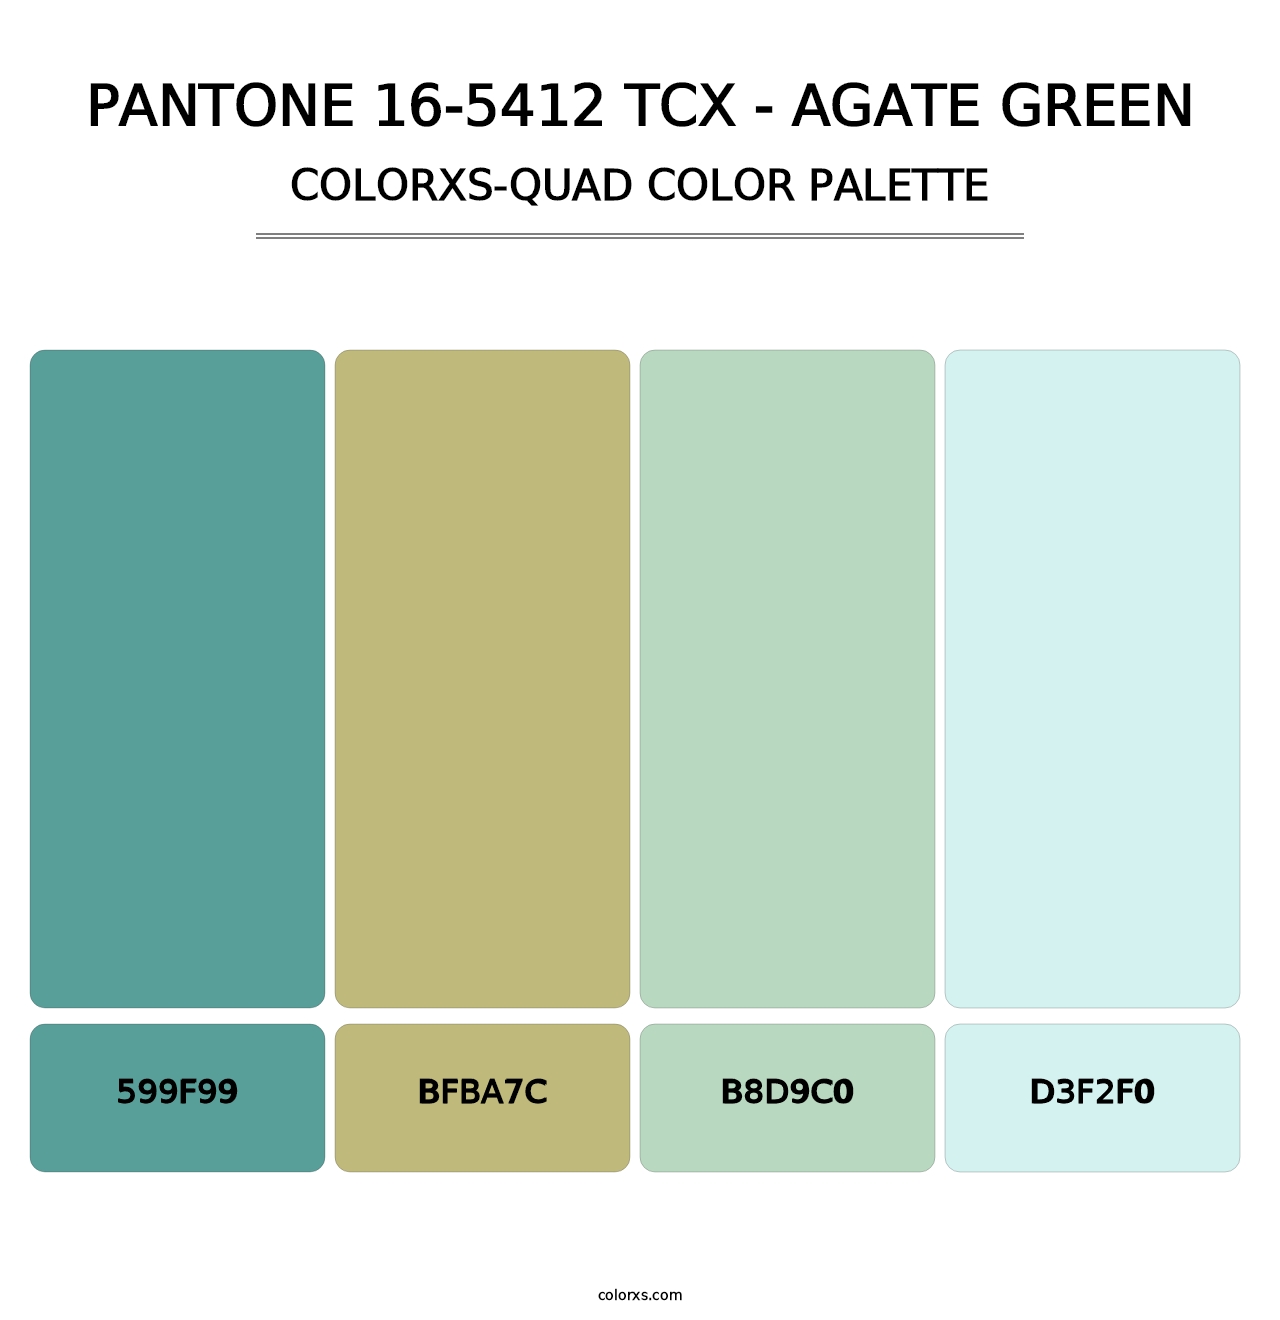 PANTONE 16-5412 TCX - Agate Green - Colorxs Quad Palette